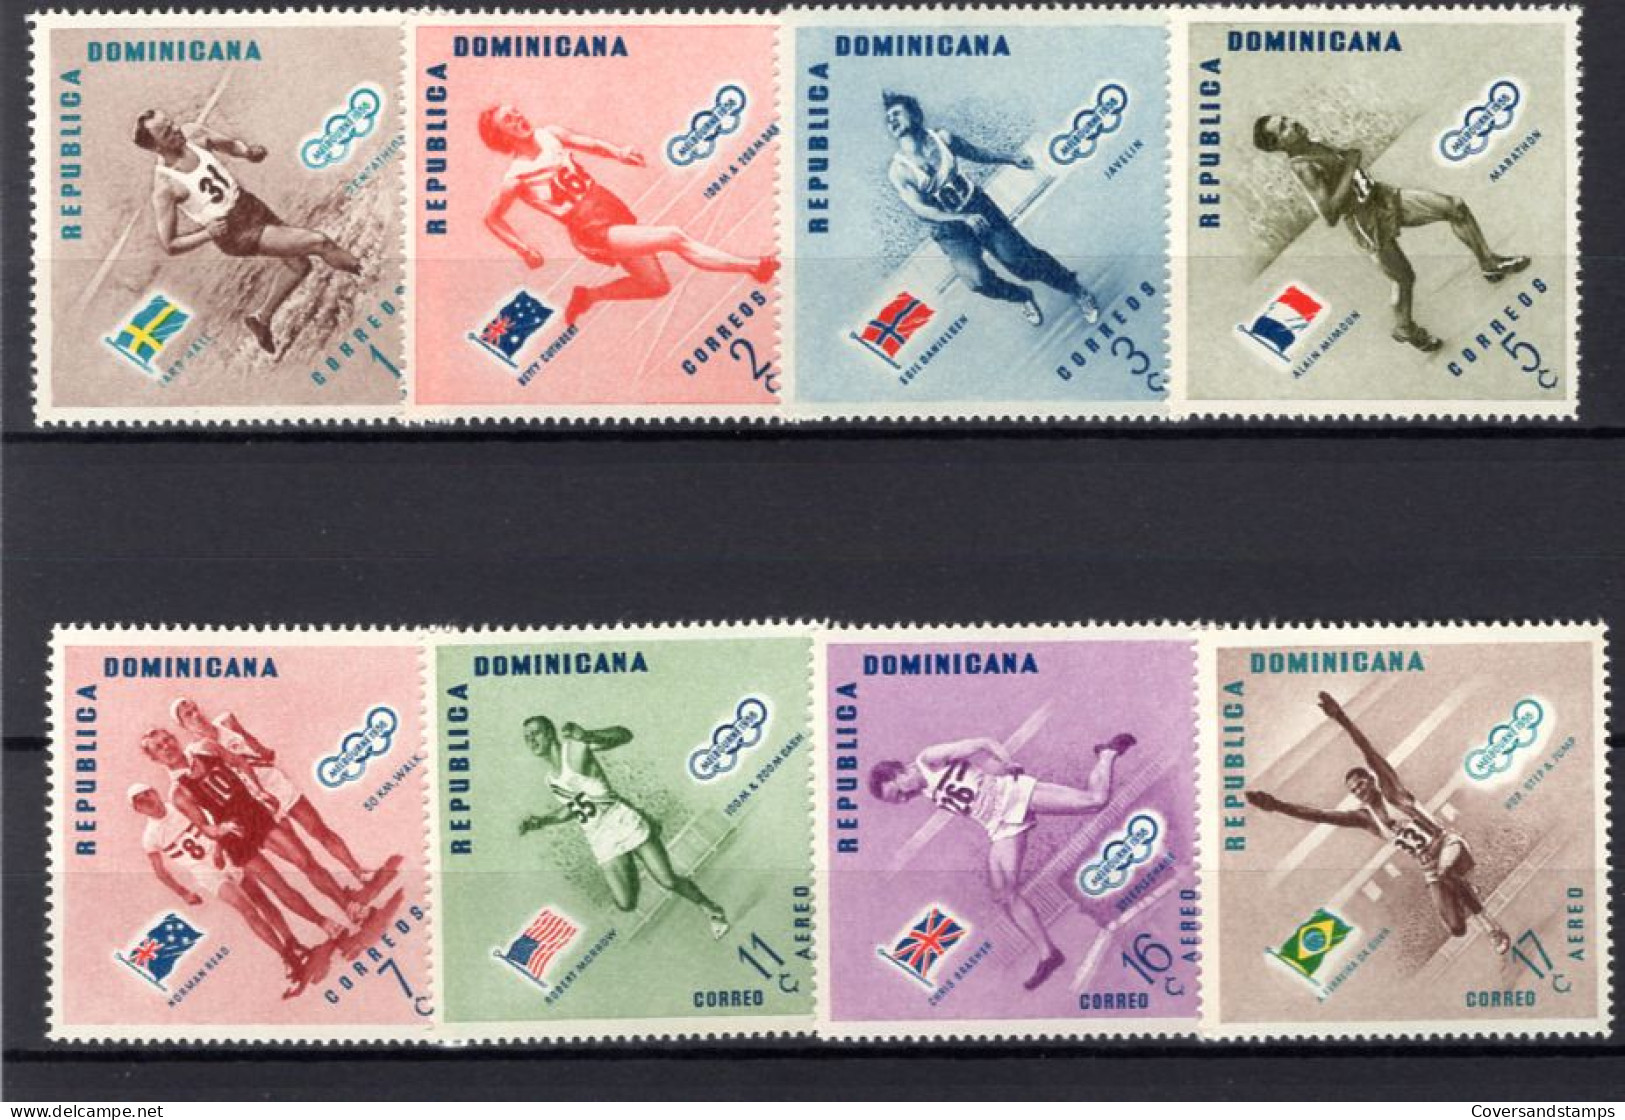  Republica Dominicana - Melbourne 1956 - Zomer 1956: Melbourne